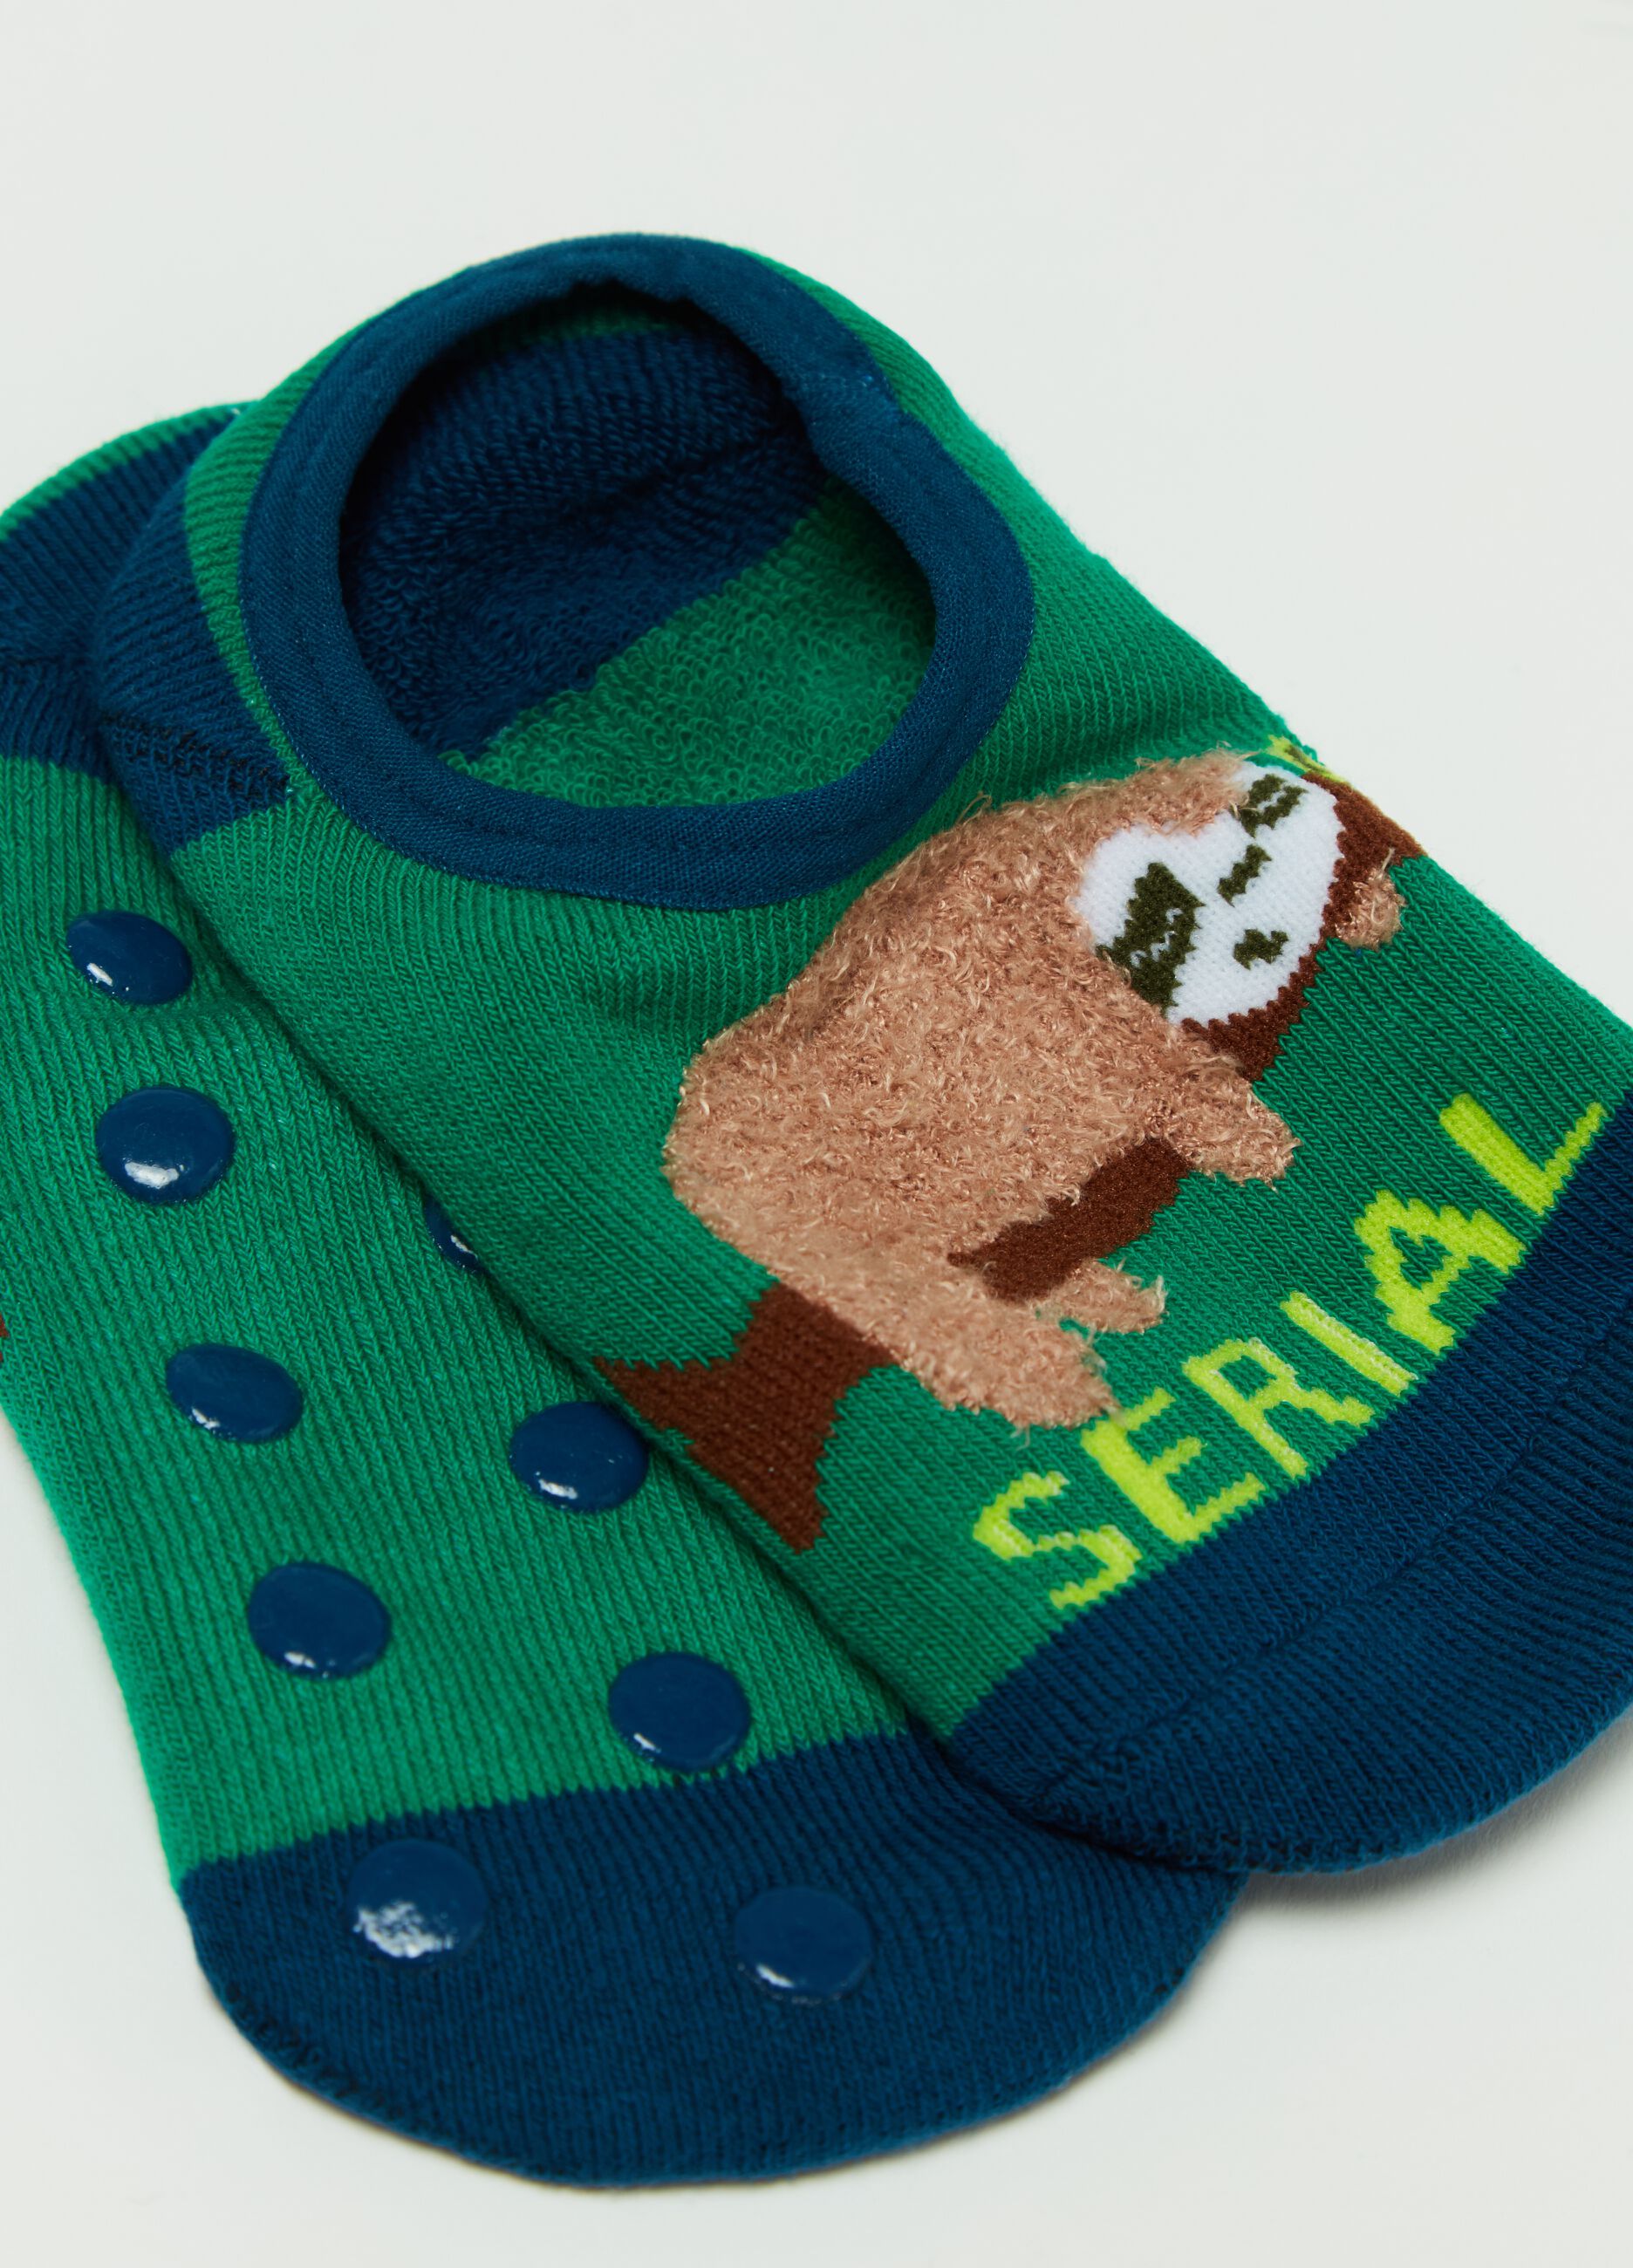 Slipper socks with sloth design